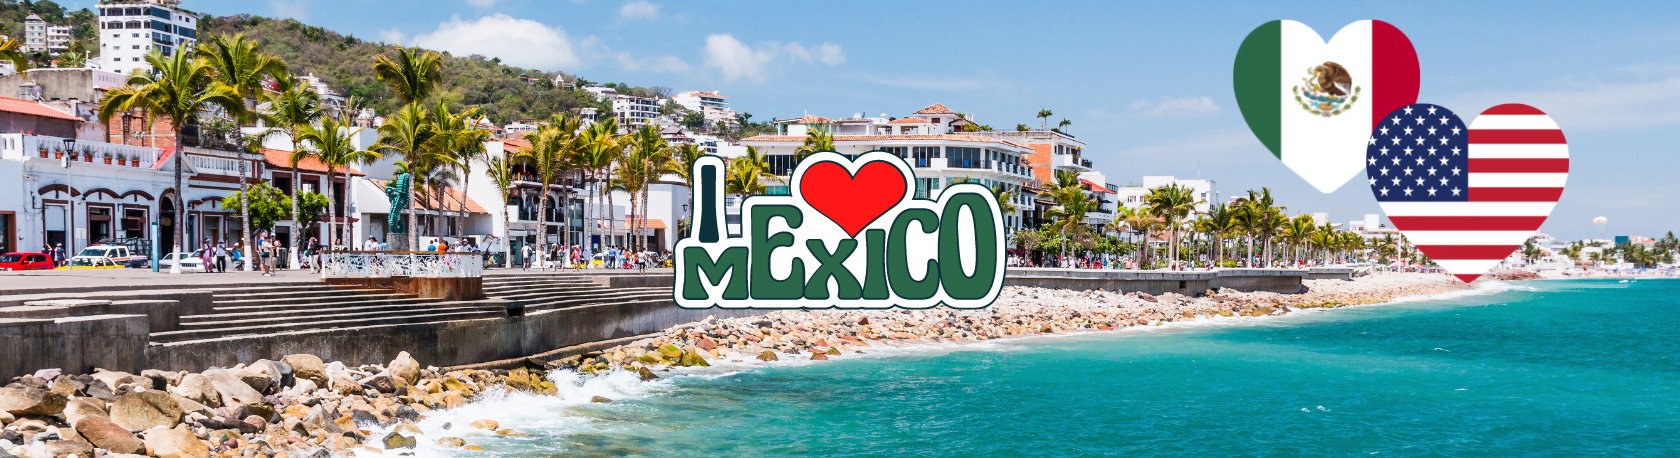 ¿Sabías que los estadounidenses conforman el mayor grupo de expatriados en México? - Easy Español